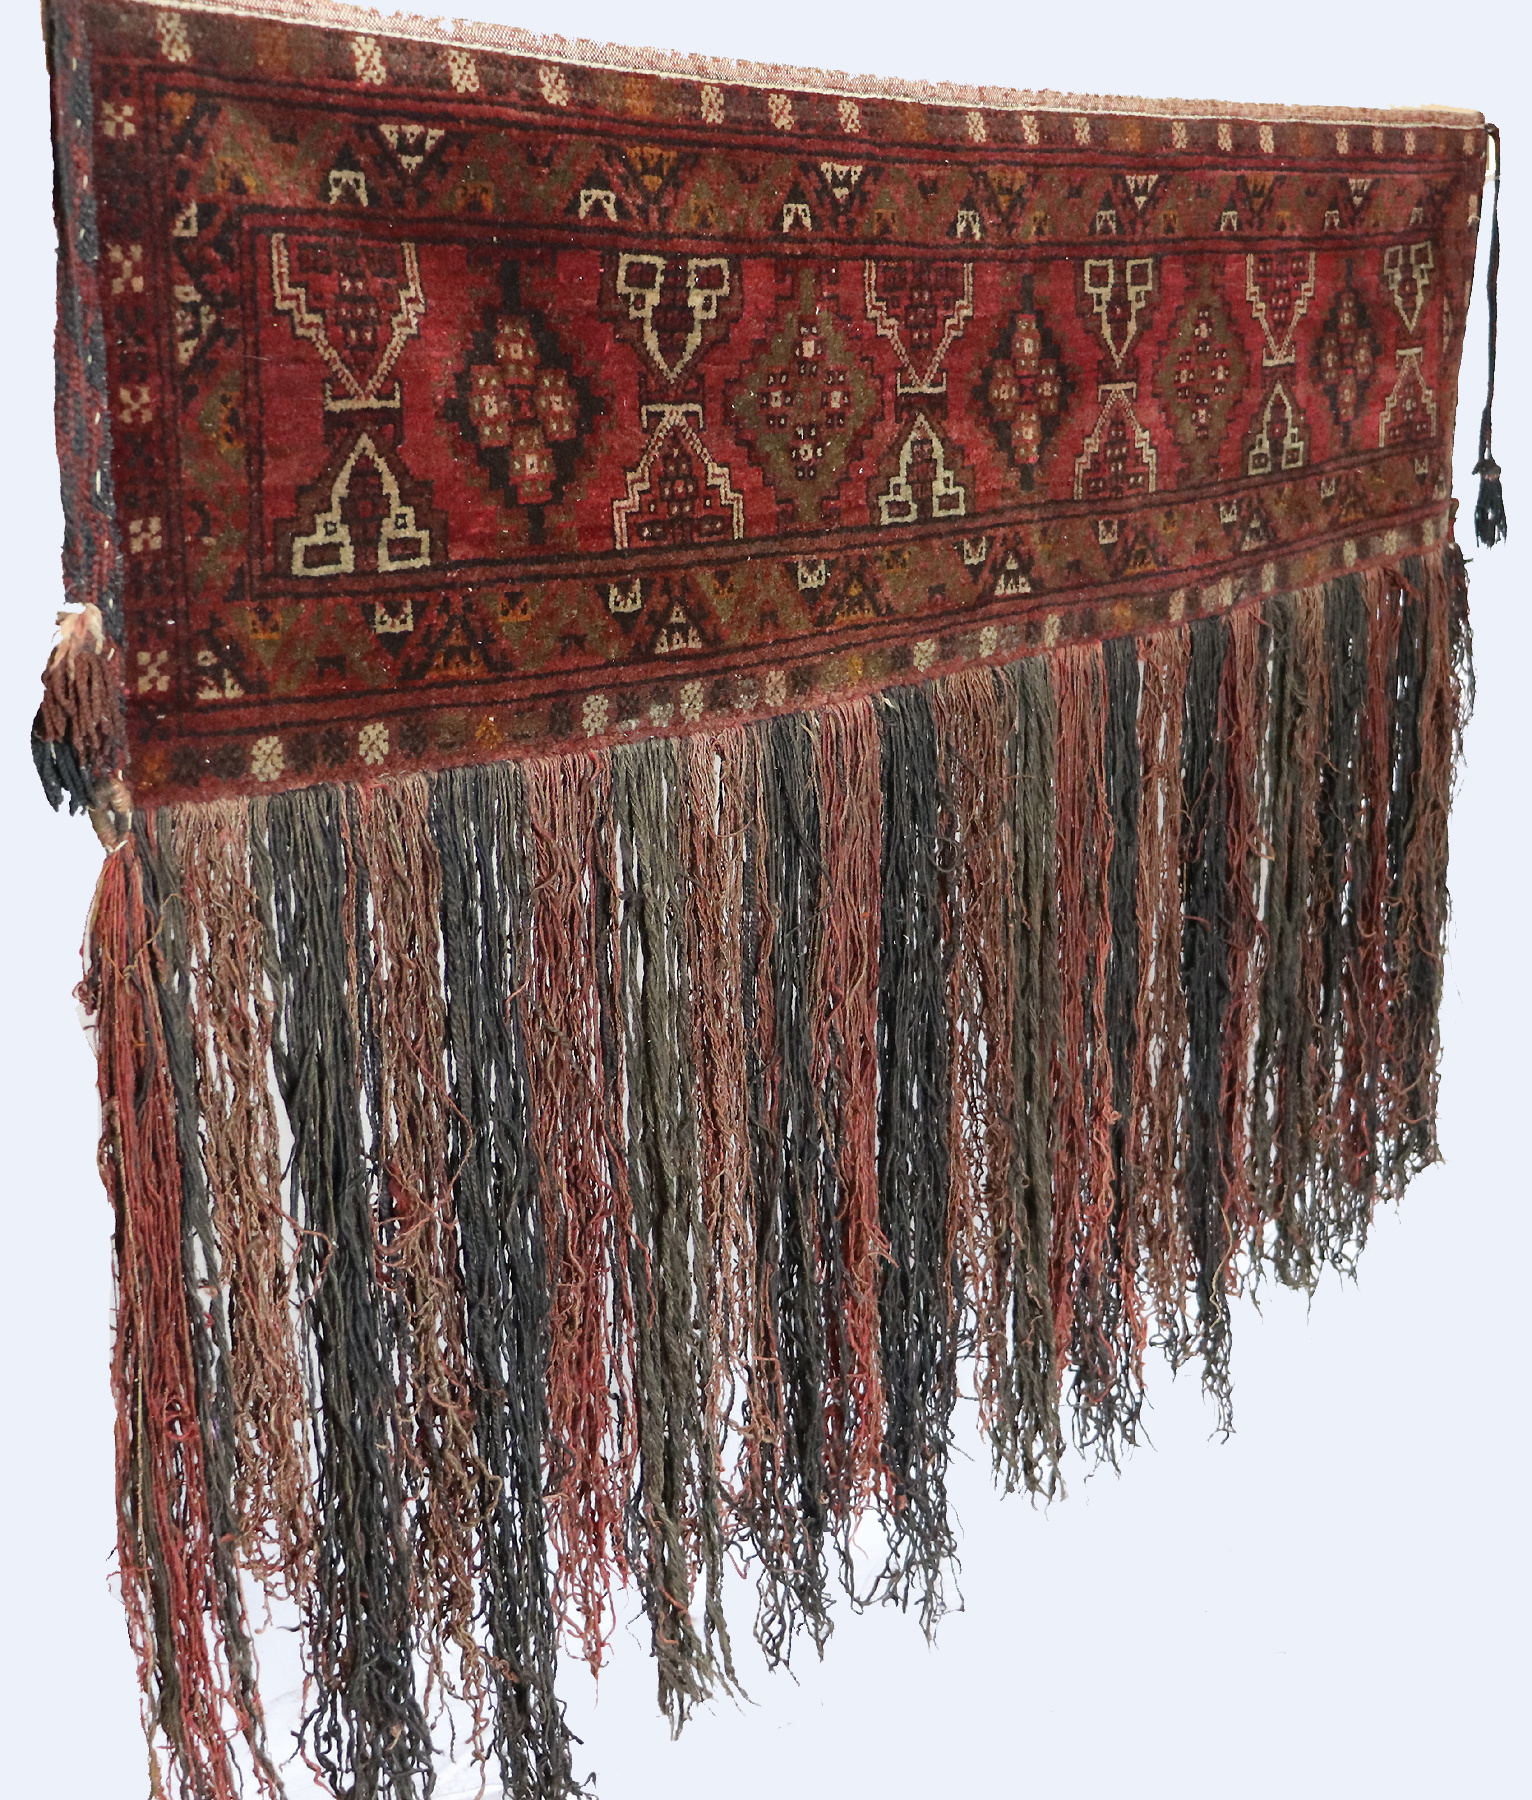 150x110 cm Antik Turkmenische Nomaden Zelttasche tasche Torba aus Afghanistan jaller Nr:22/A